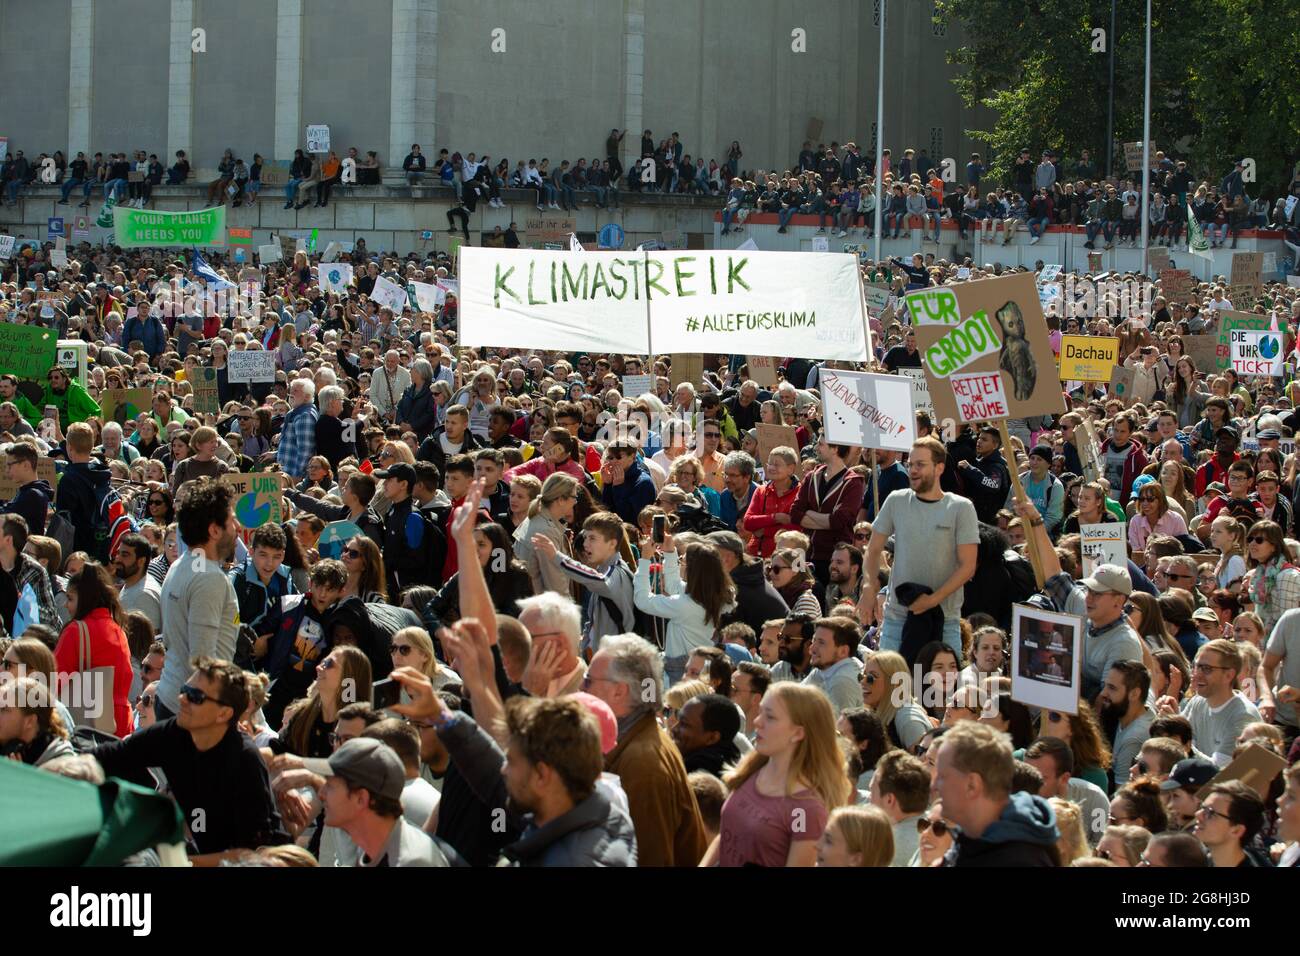 anner mit Aufschrift Klimareik Alle für's Klima. Am 20. September sammeln sich in München zehntausende Menschen, um für eine andere grüne Klimapolitik zu demontieren. In more als 3330 Städten wird heute mit den gleichen Zielen demonstriert. (Foto: Alexander Pohl/Sipa USA) Quelle: SIPA USA/Alamy Live News Stockfoto